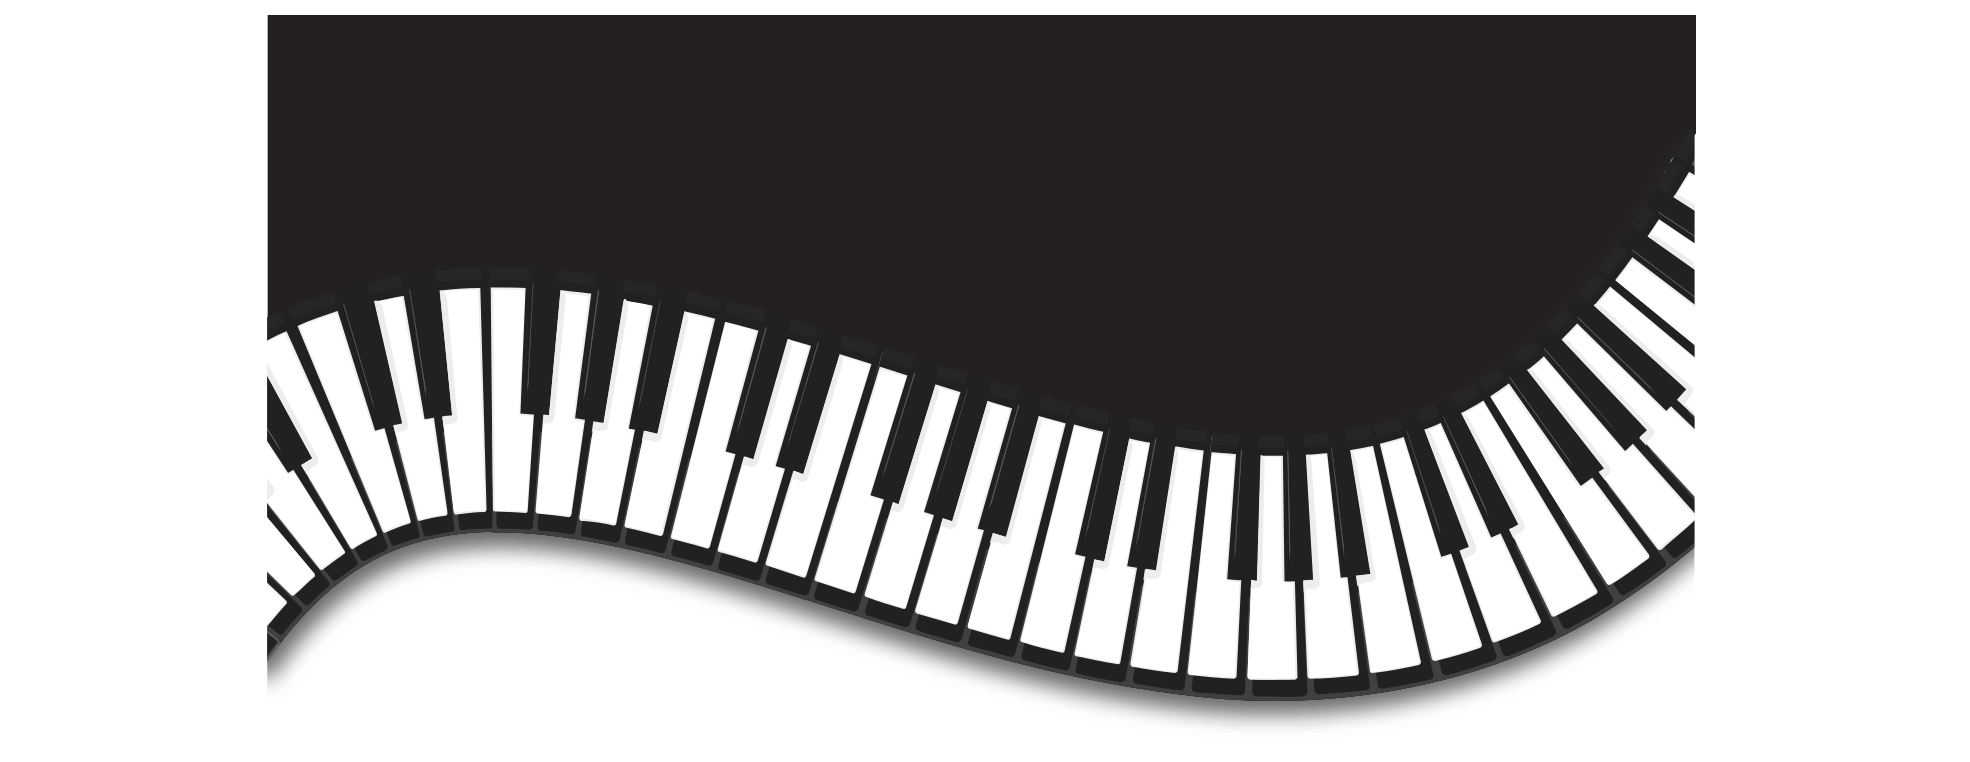 البيانو الموسيقى لوحة المفاتيح PNG